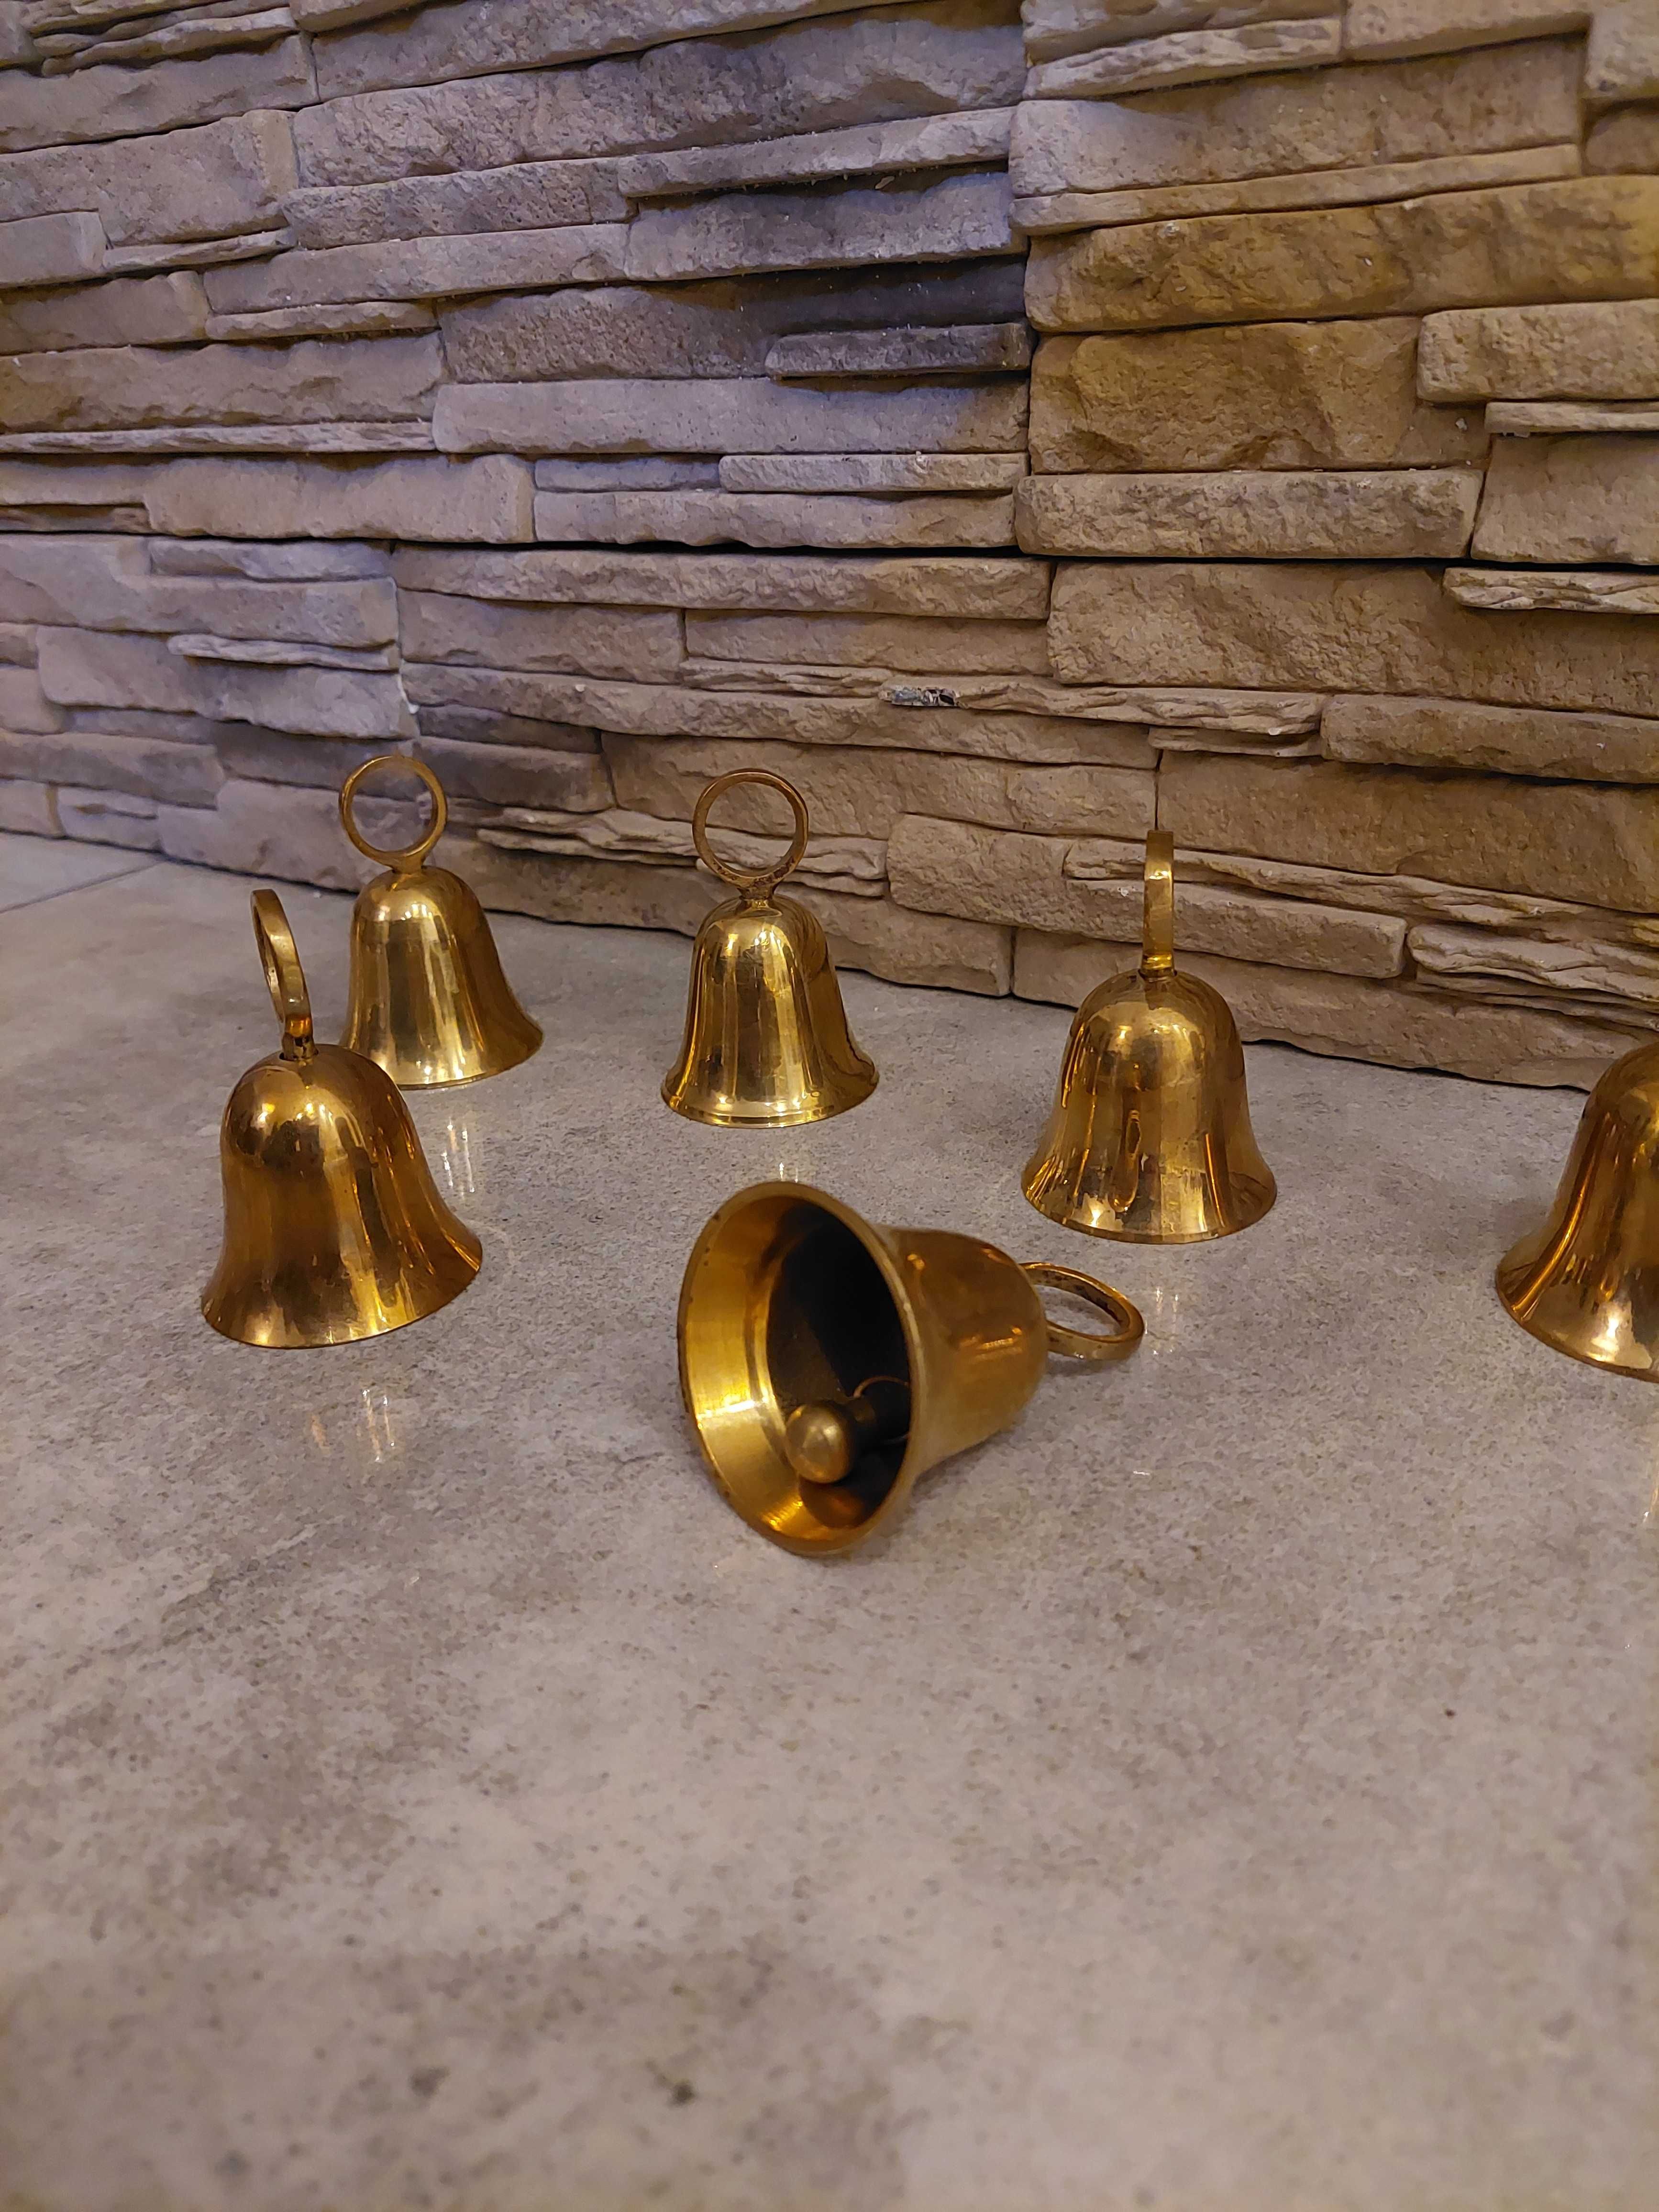 Dzwonek mosiężny, dzwon, stary dzwoneczek, ciekawy przedmiot